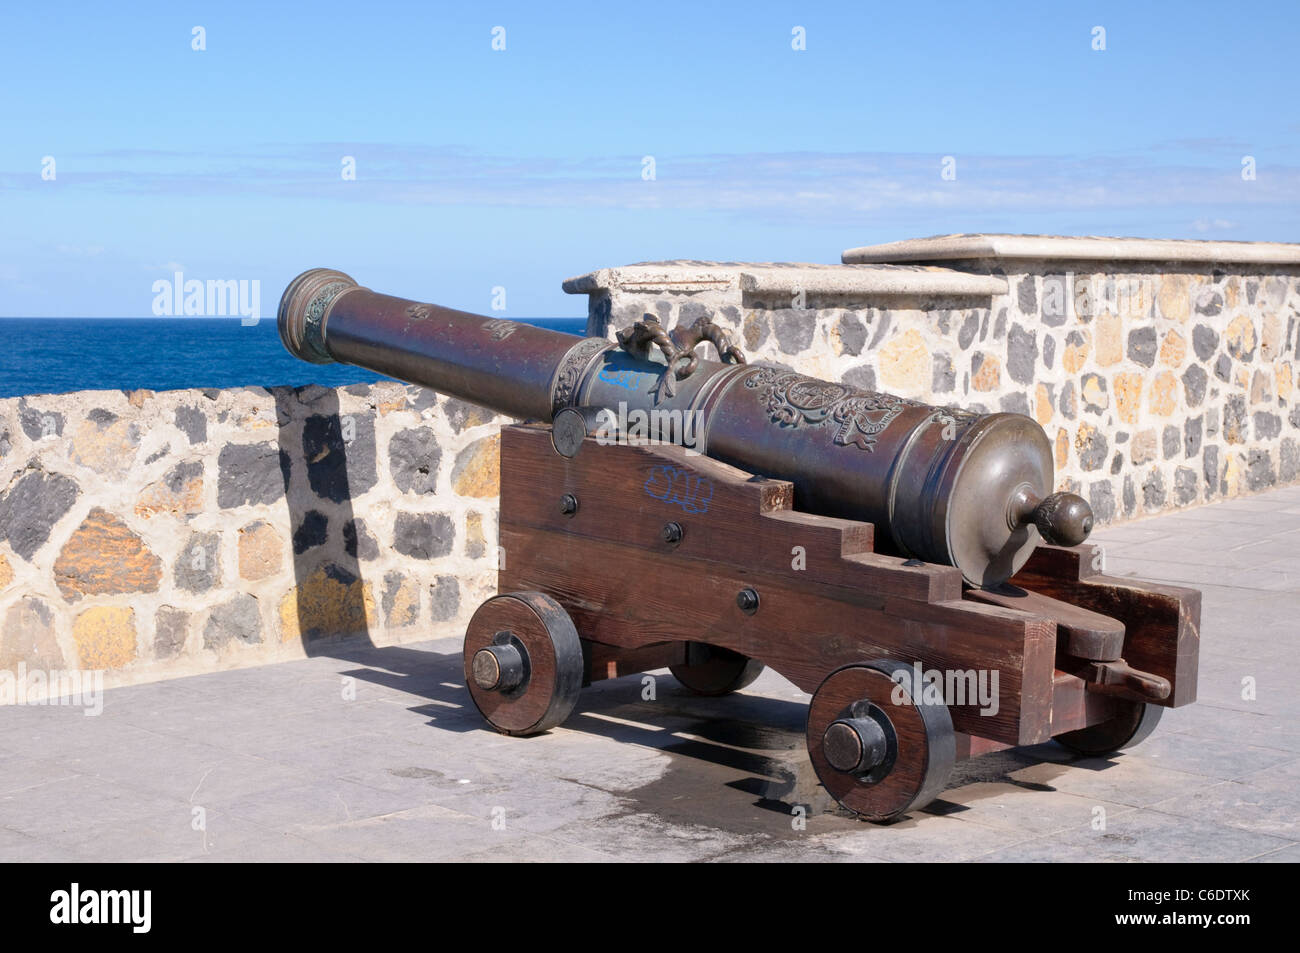 Canon, mur fortifié de la Plaza Europa, Puerto de la Cruz, Tenerife, Canaries, Espagne, Europe Banque D'Images